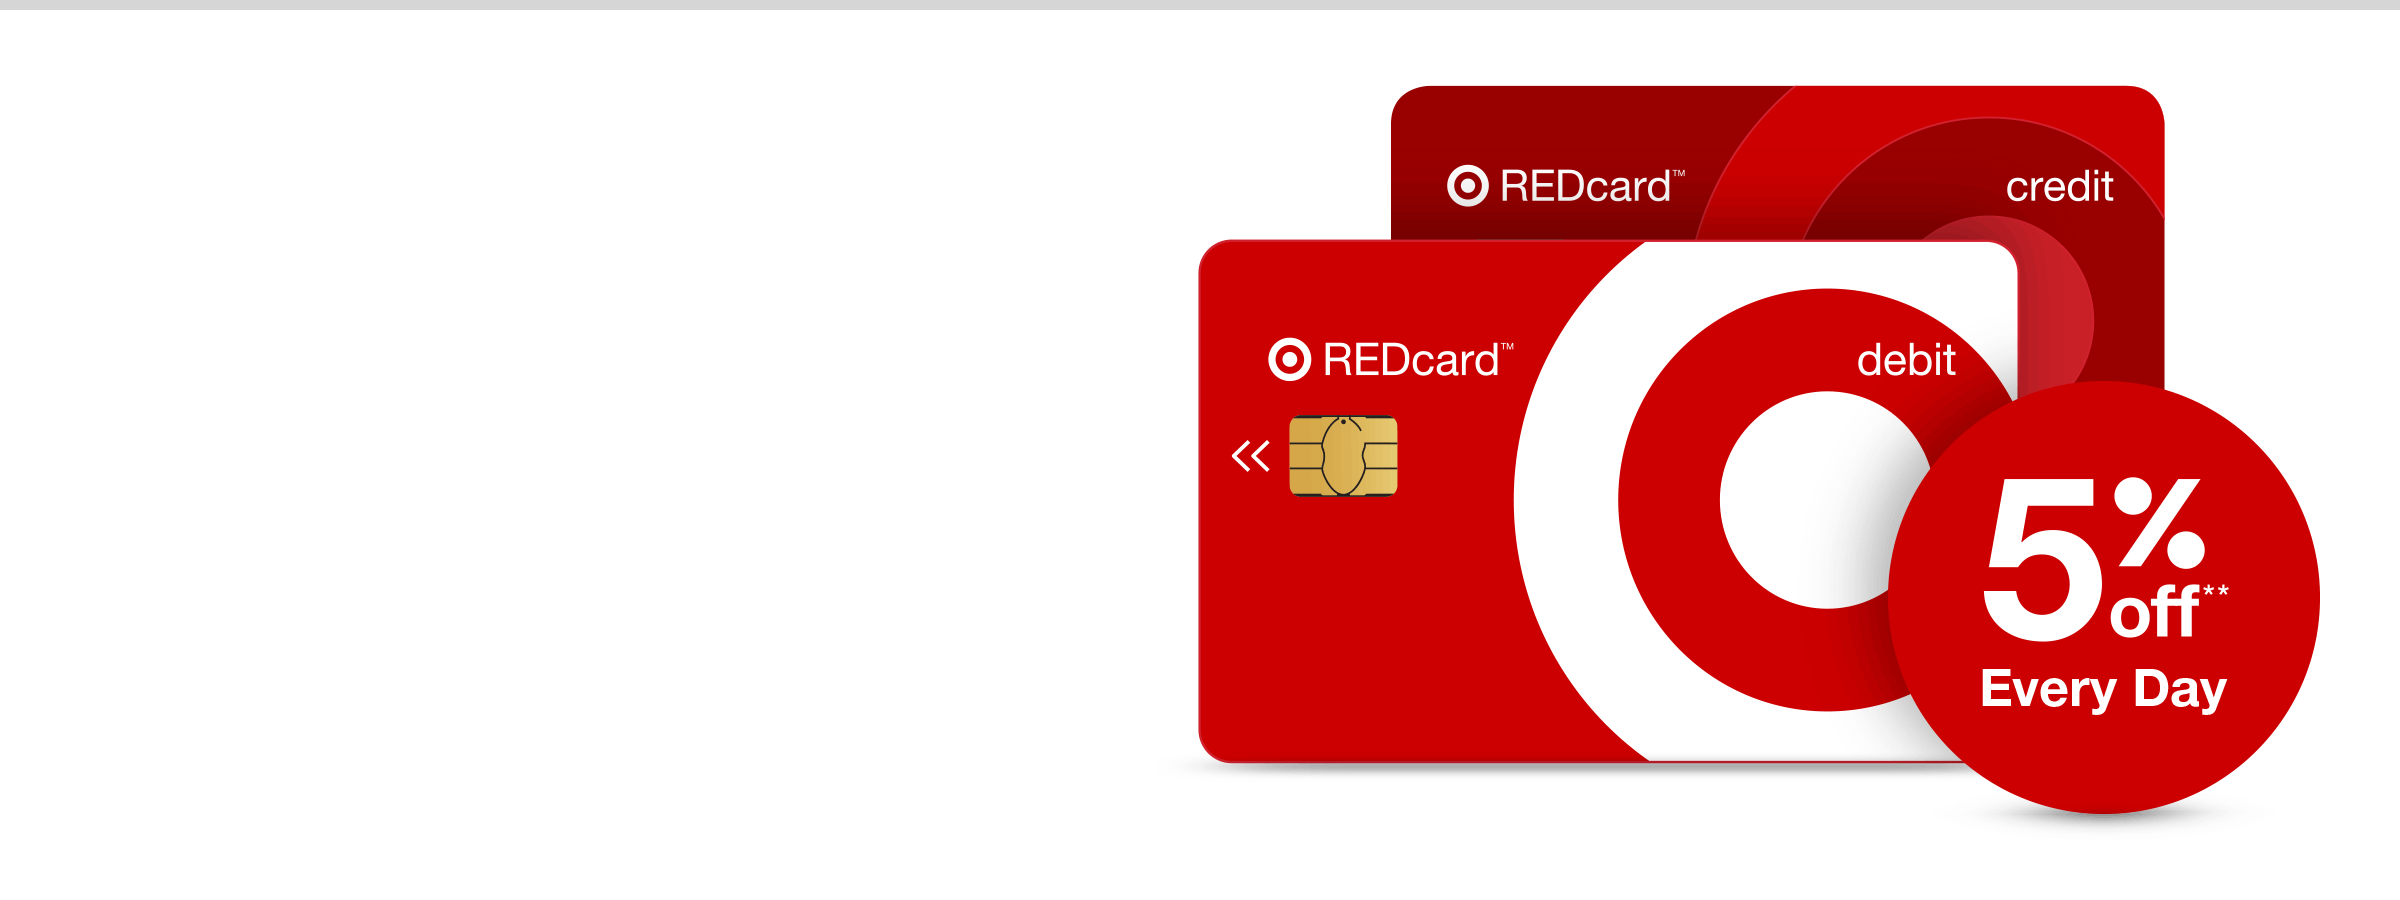 REDcard : Target